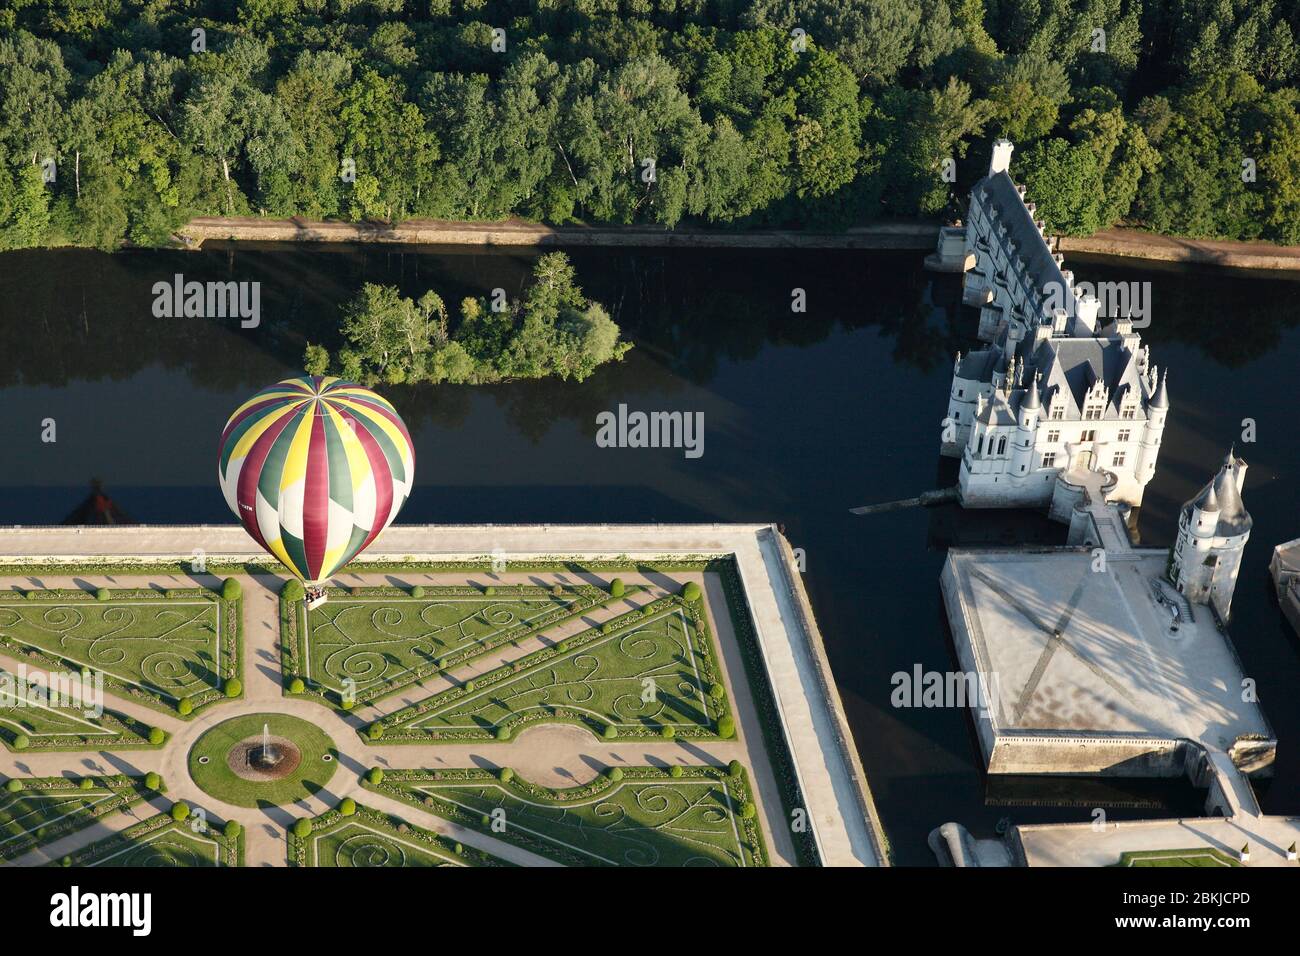 France, Indre et Loire, vallée de la Loire classée au patrimoine mondial de l'UNESCO, Chenonceaux, château de Chenonceau (vue aérienne) jardin de Catherine de Médicis survolé par une montgolfière Banque D'Images